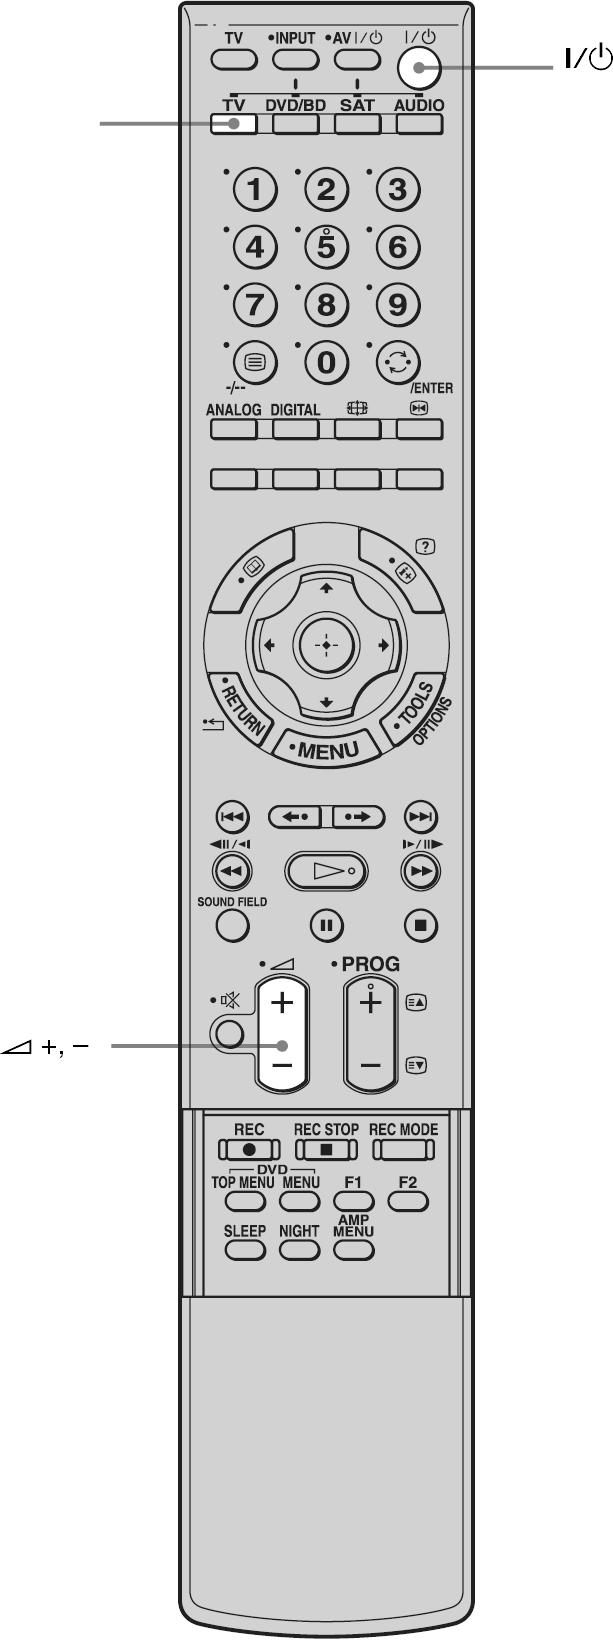 Uporaba TV prijemnika TV (bijelo) 1 Uključite TV prijemnik i odaberite program. Podrobnosti potražite u uputama za uporabu TV prijemnika. 2 Uključite postolje.